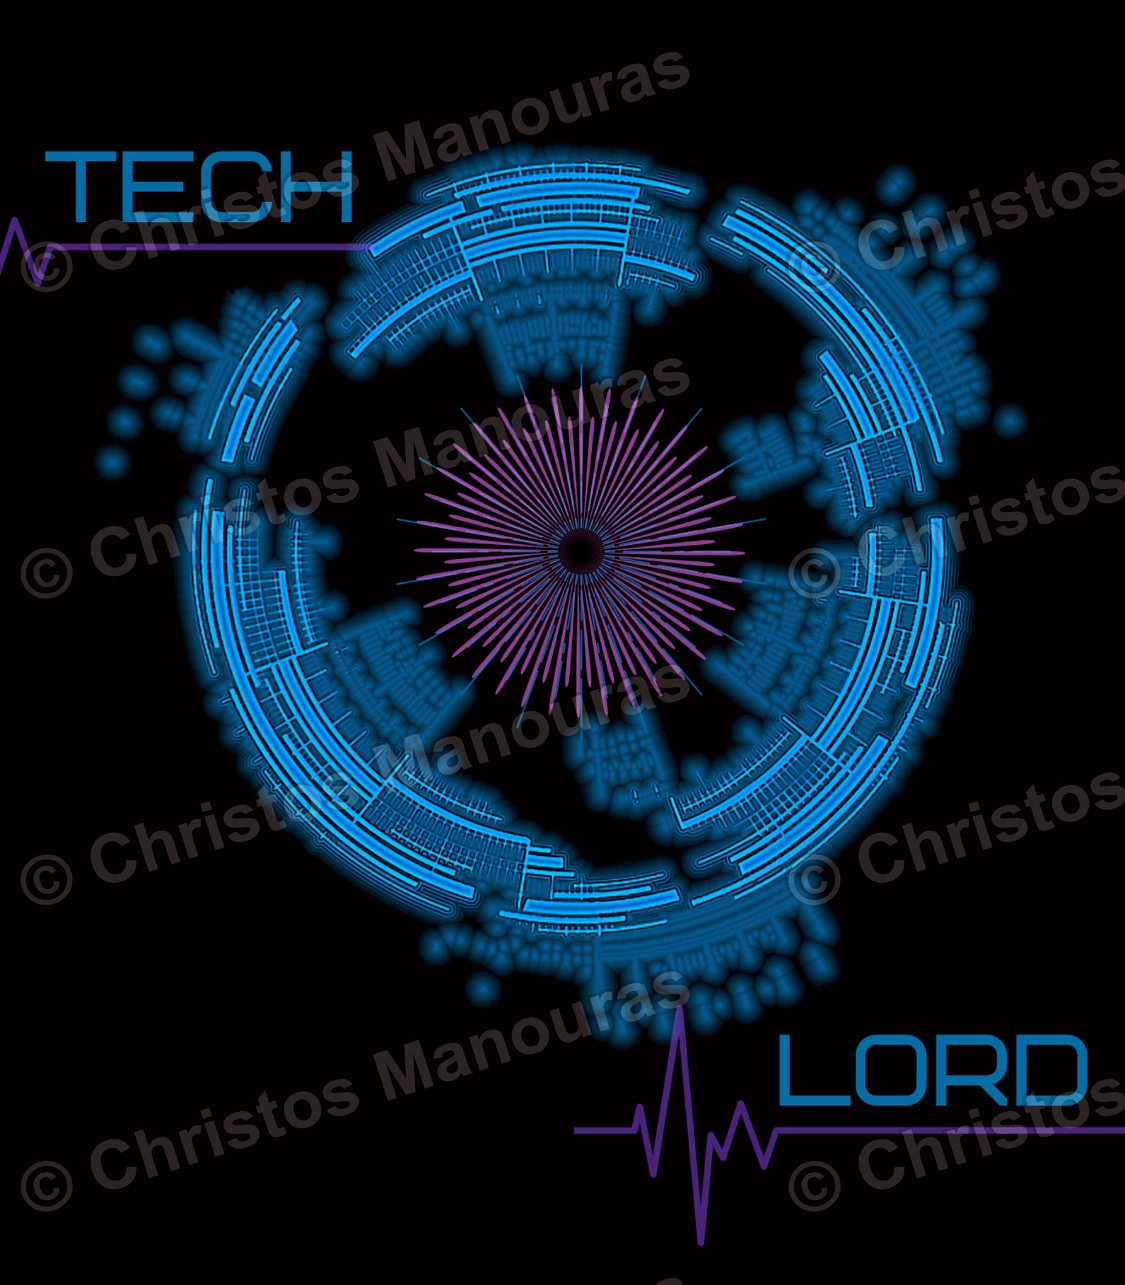 "Tech-Lord" digital artwork by DWDesign